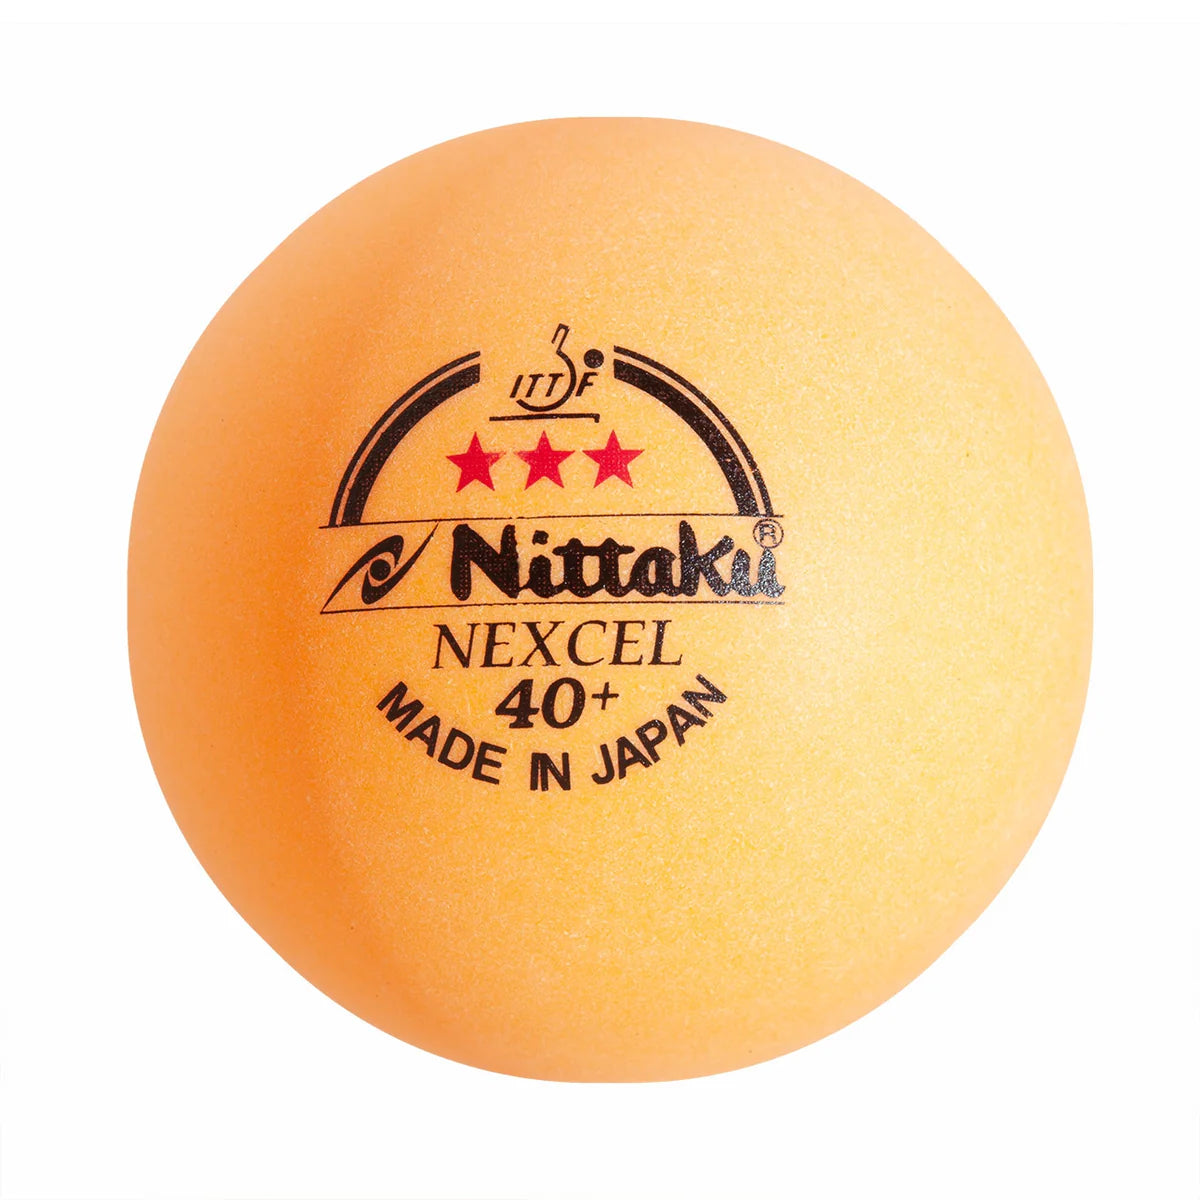 Nittaku Nexcel 40+*** orange 120 ballen